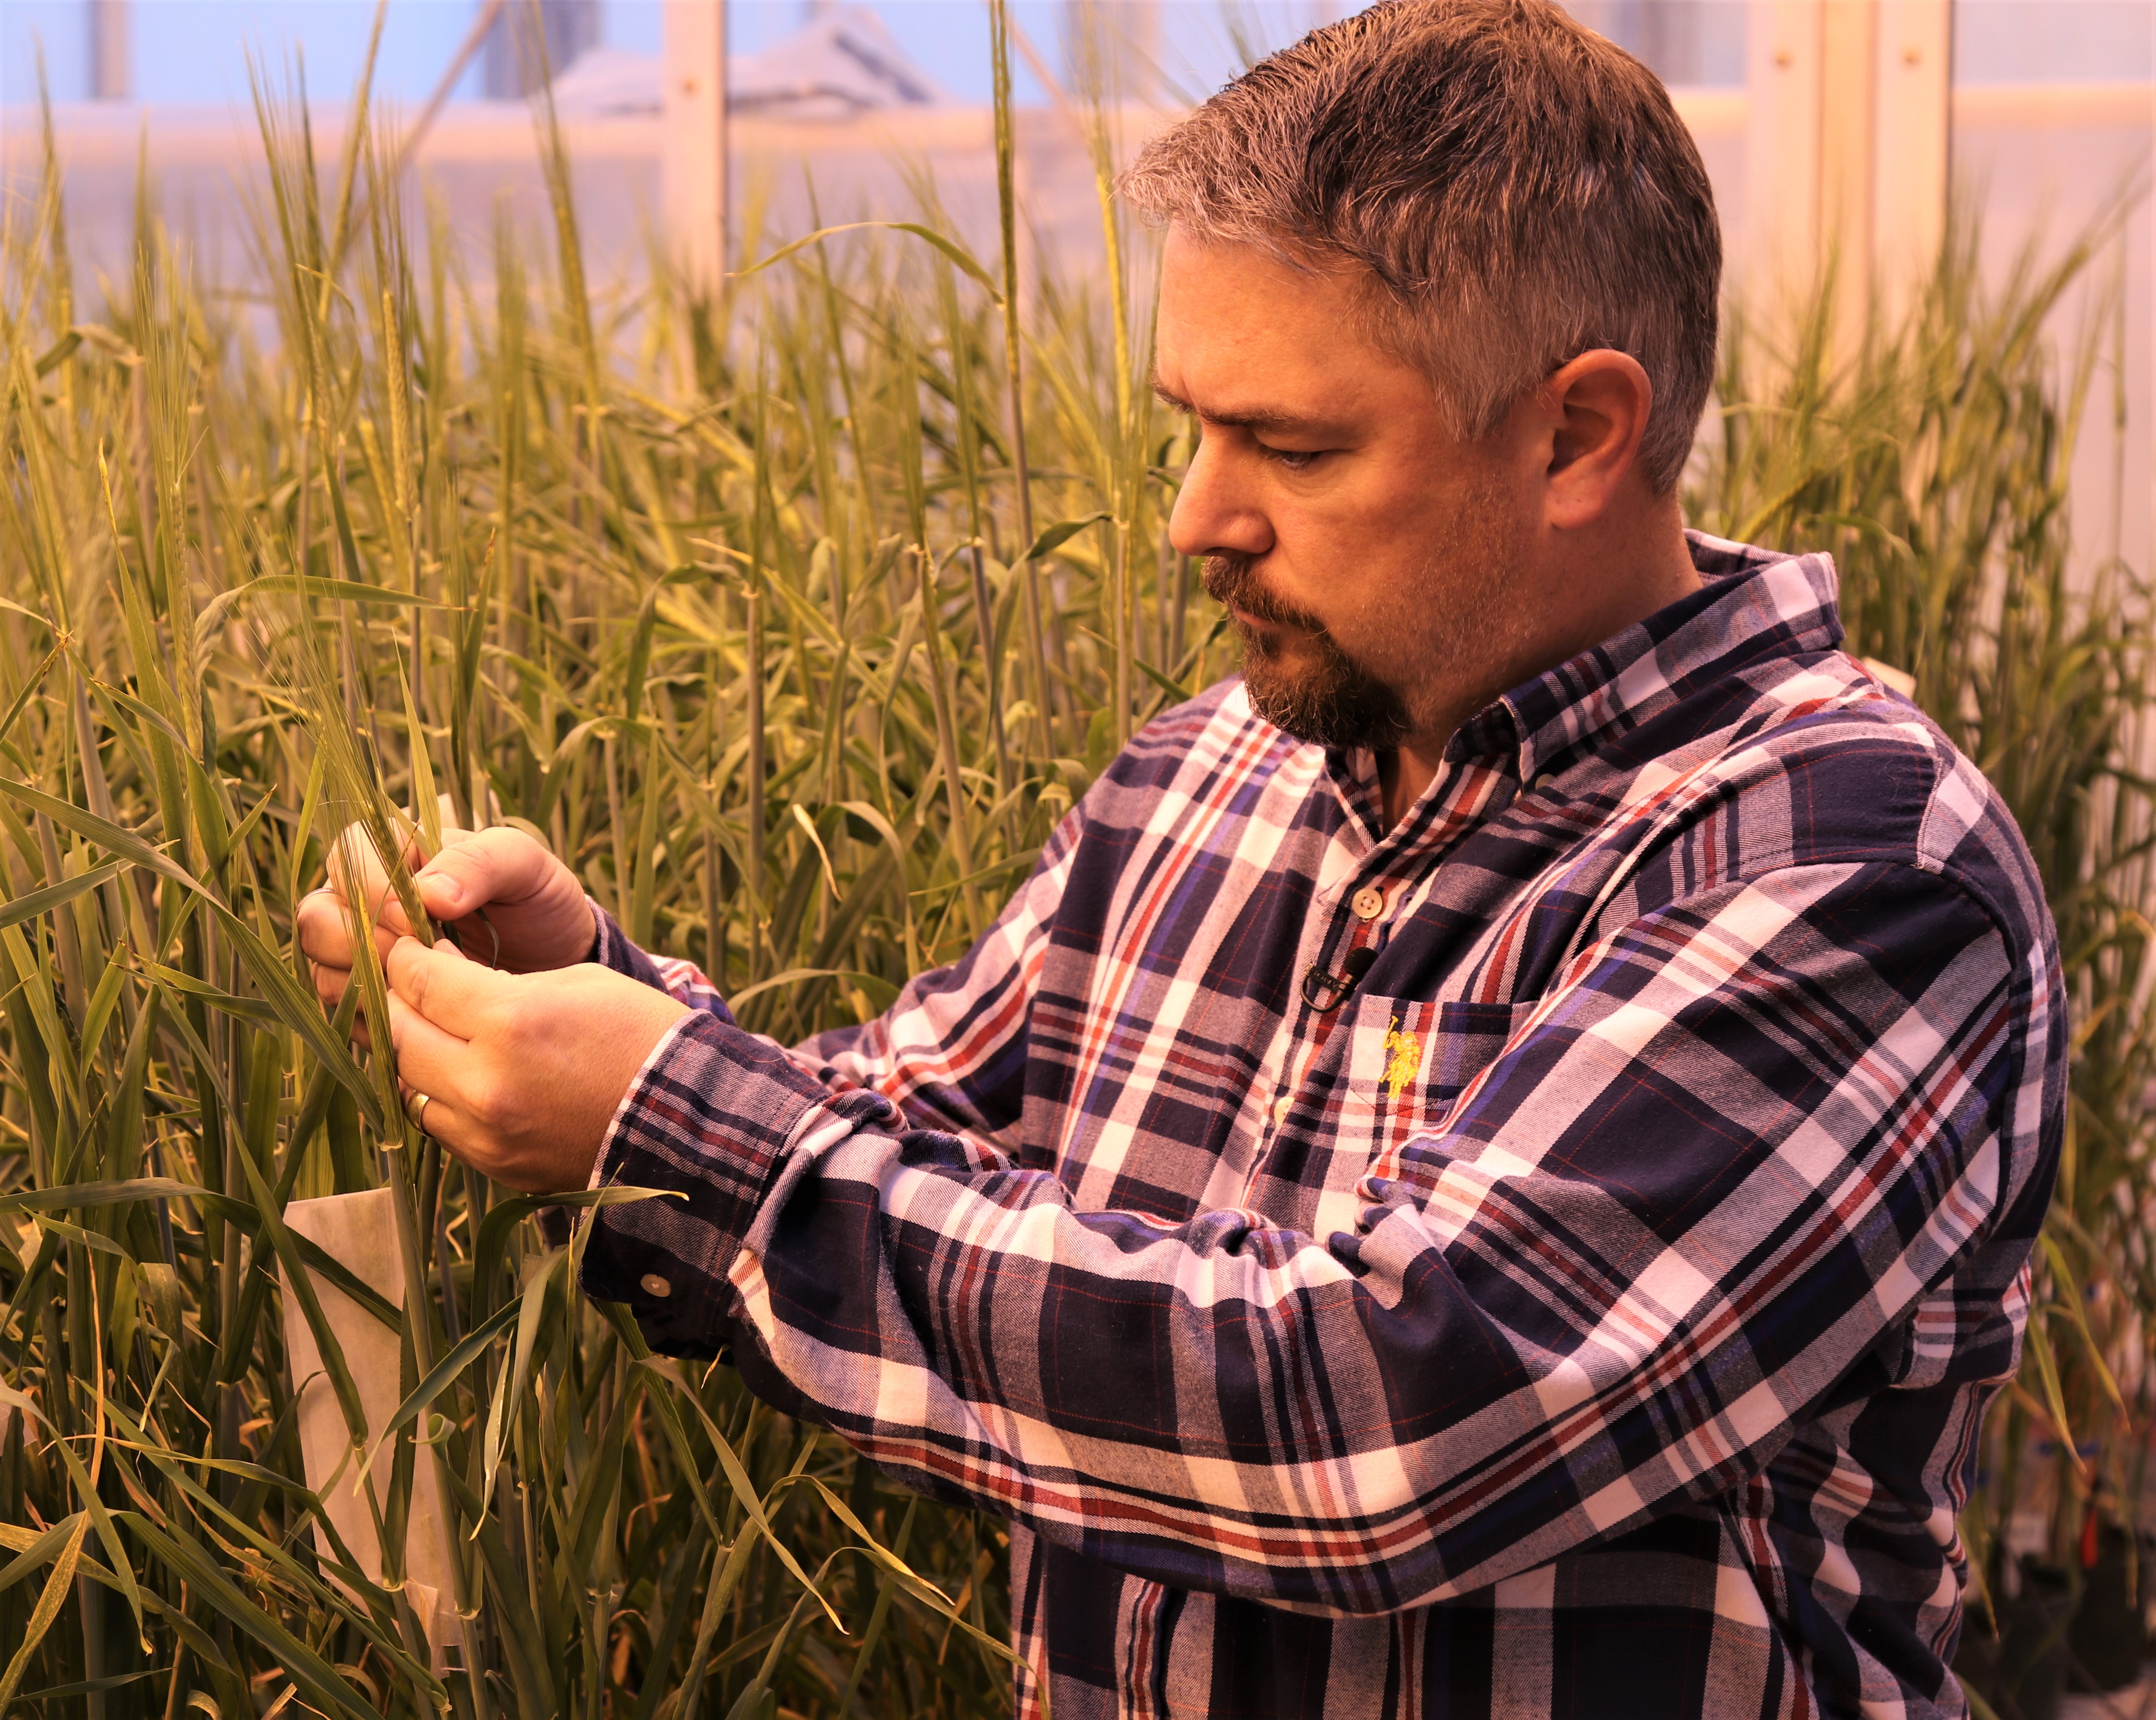 Un chercheur dans une serre inspecte un plant de blé avec ses mains.